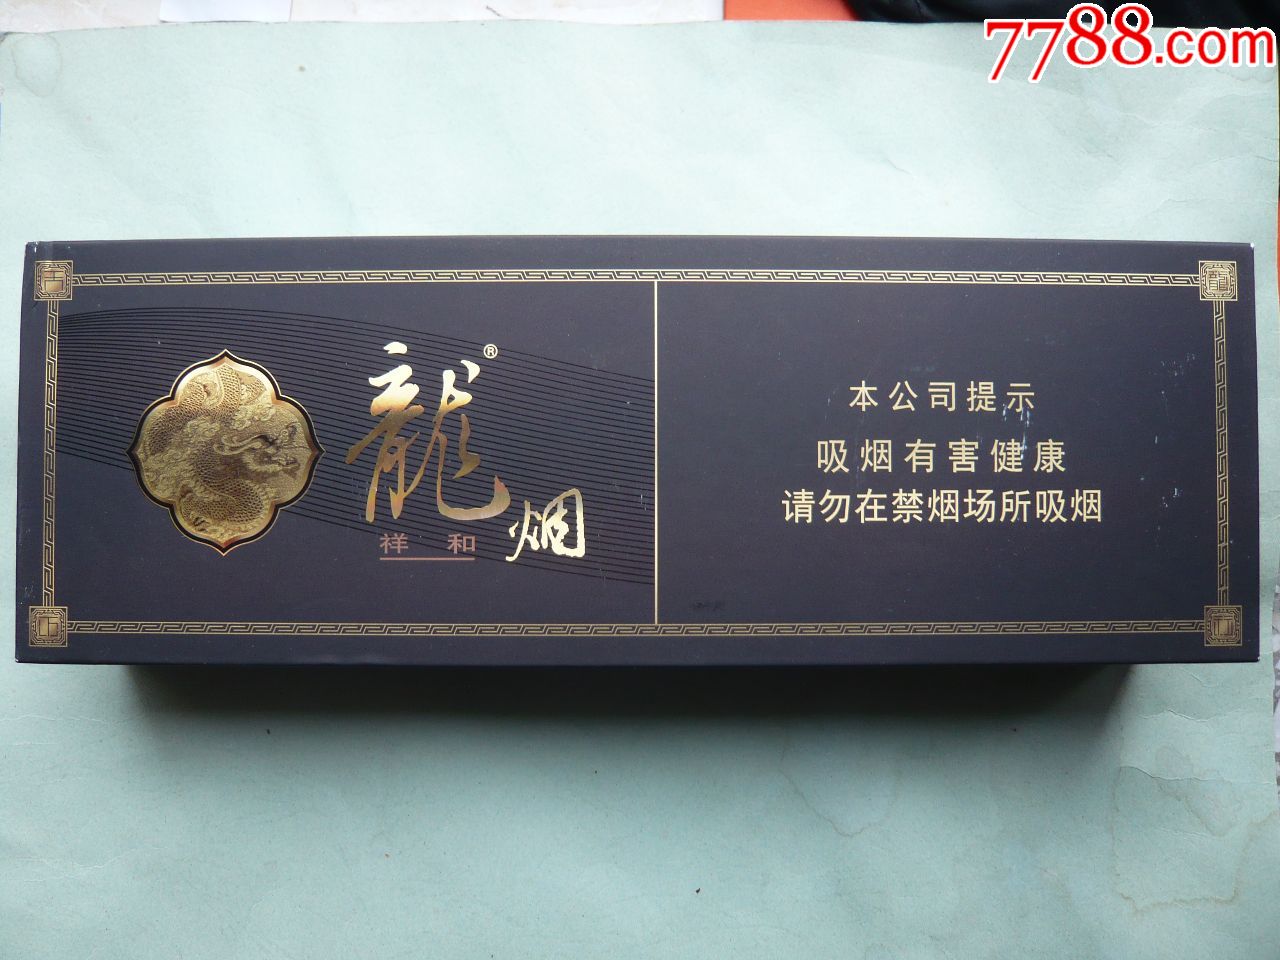 条盒烟标:龙烟·祥和,哈尔滨,黑龙江烟草工业有限责任